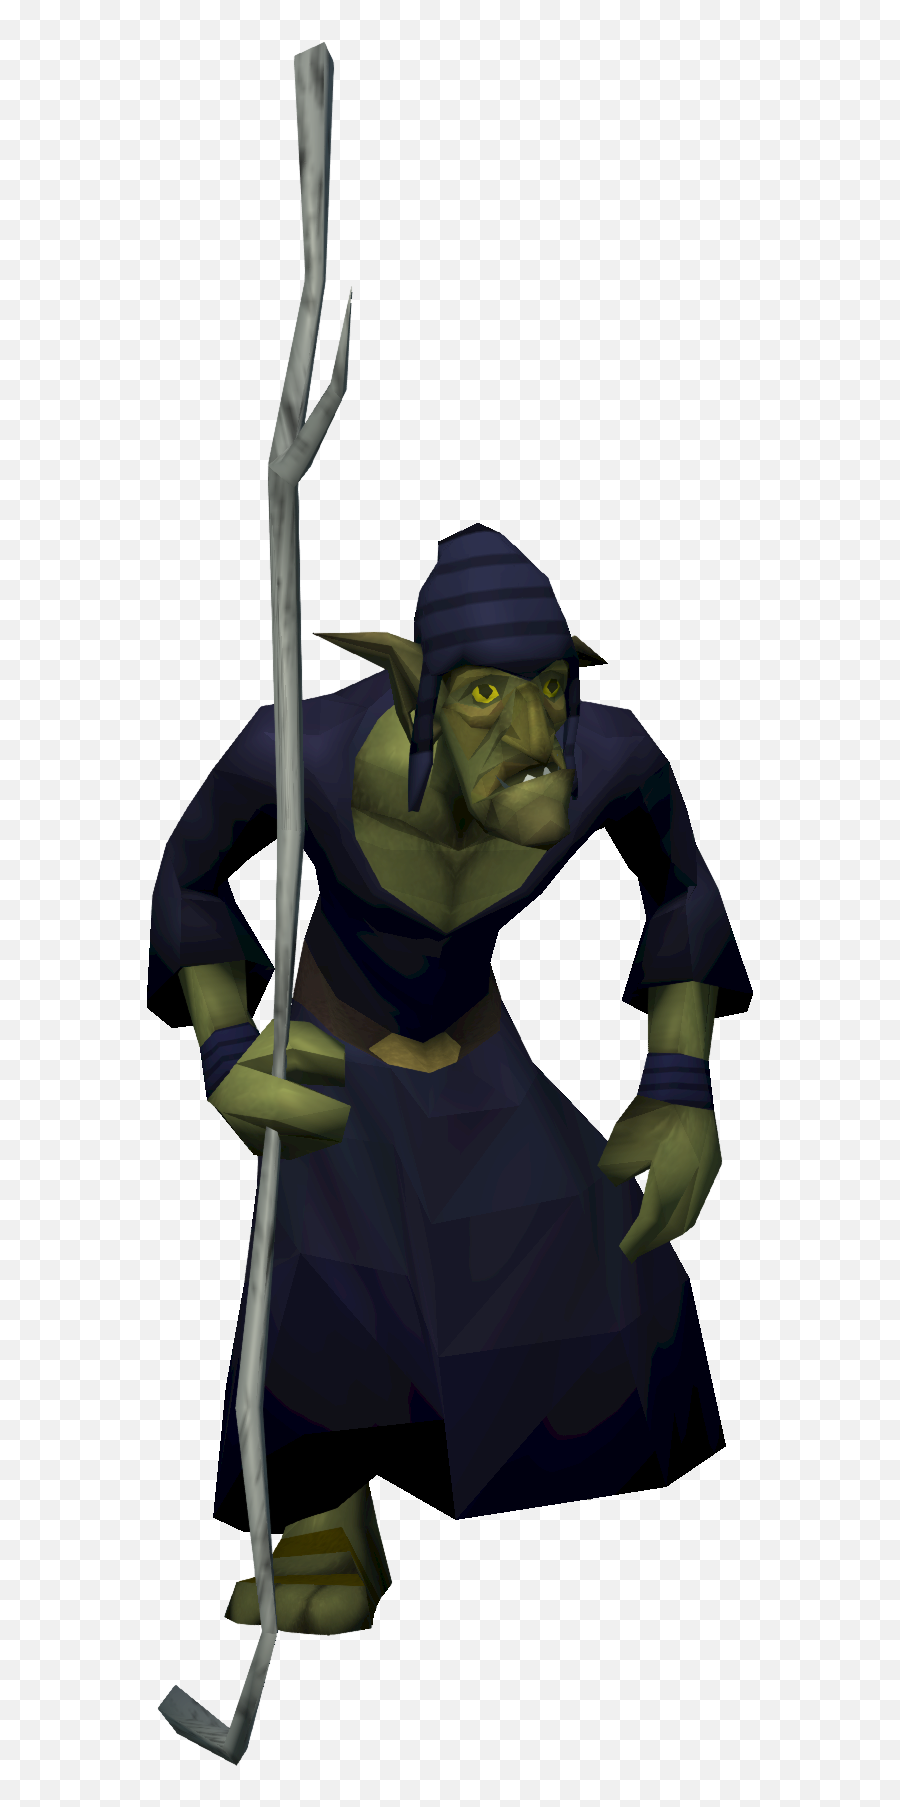 Goblin Champion - The Runescape Wiki Goblin Mage Runescape Png,Champion Icon